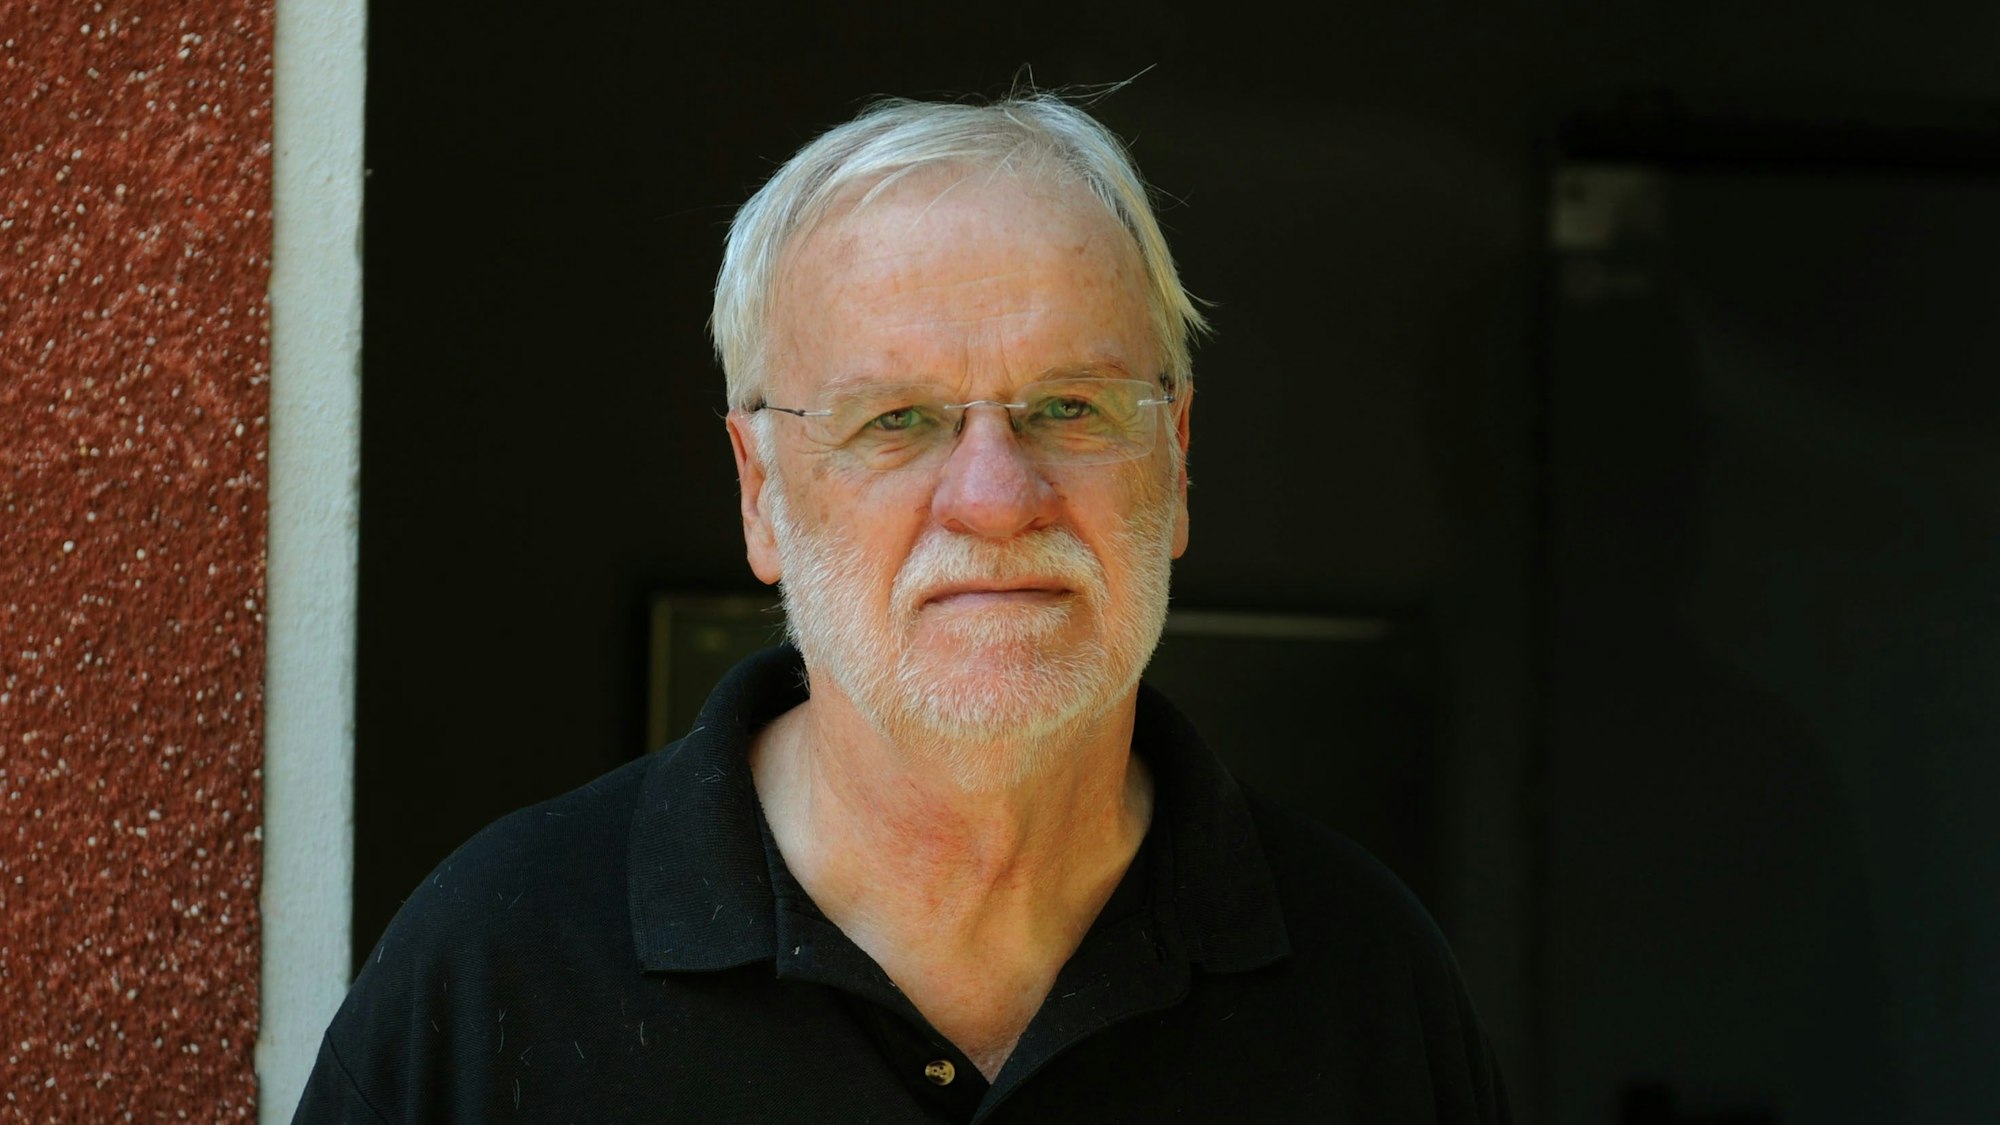 
Walter Buschmann vor einem rot-weiß-schwarzem Hintergrund.